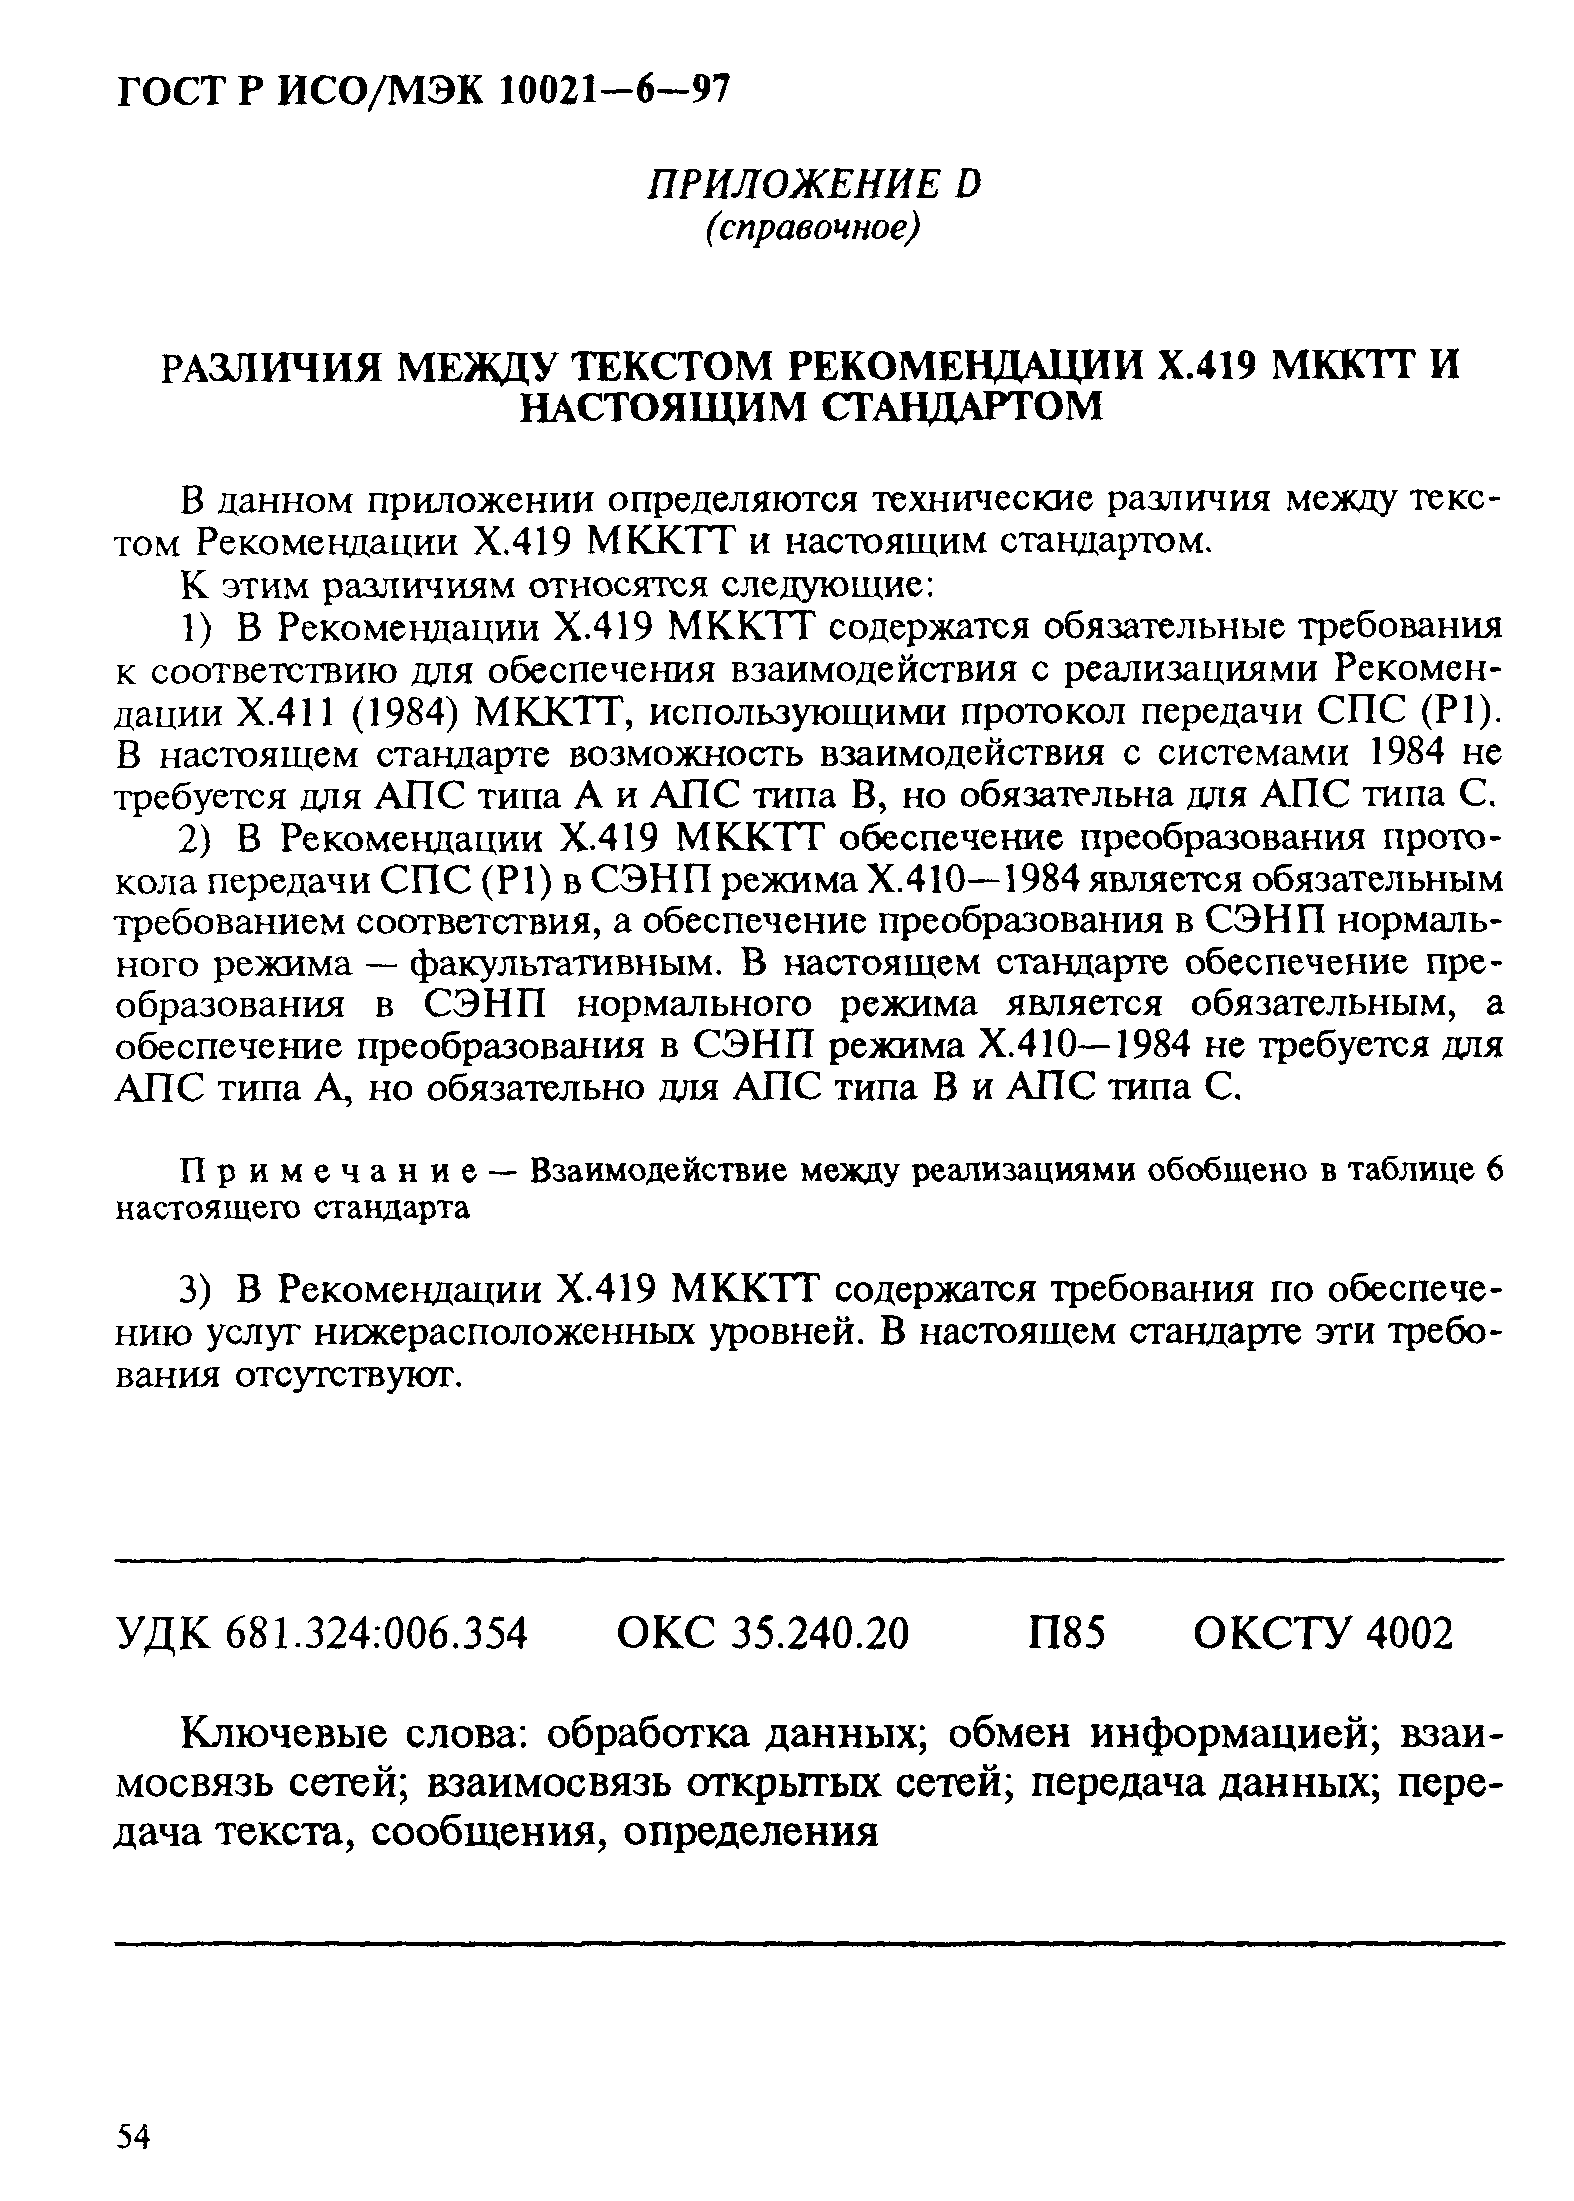 ГОСТ Р ИСО/МЭК 10021-6-97